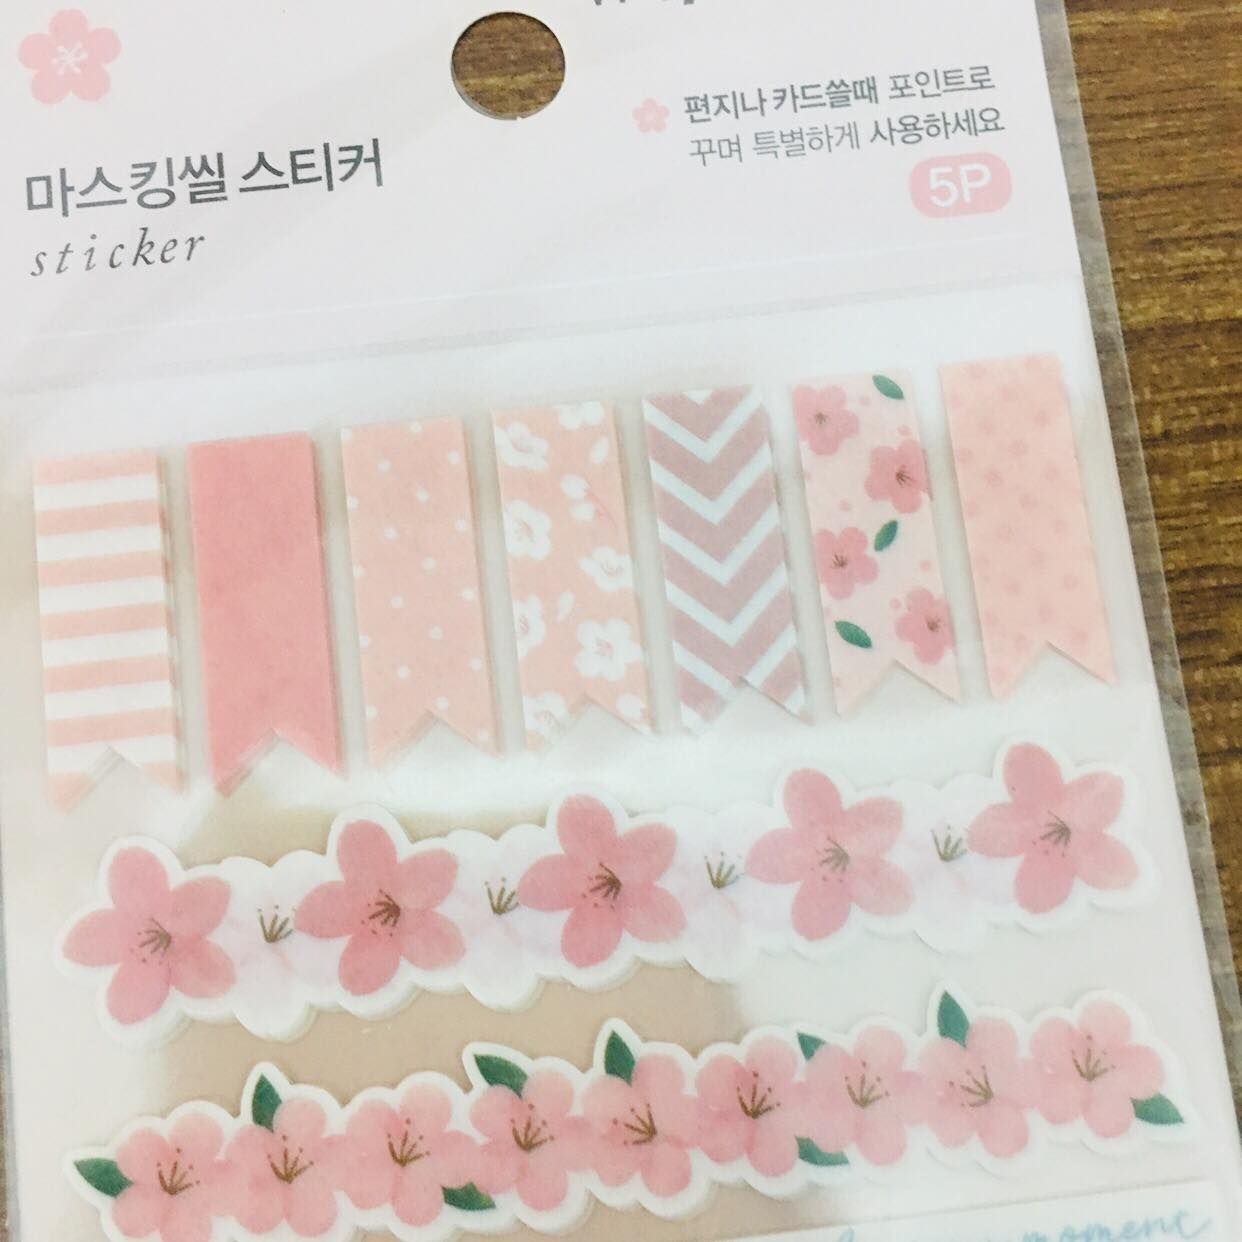 Daiso USA - Sakura Sticker Series 🌸 #daiso #daisousa #daisojapan